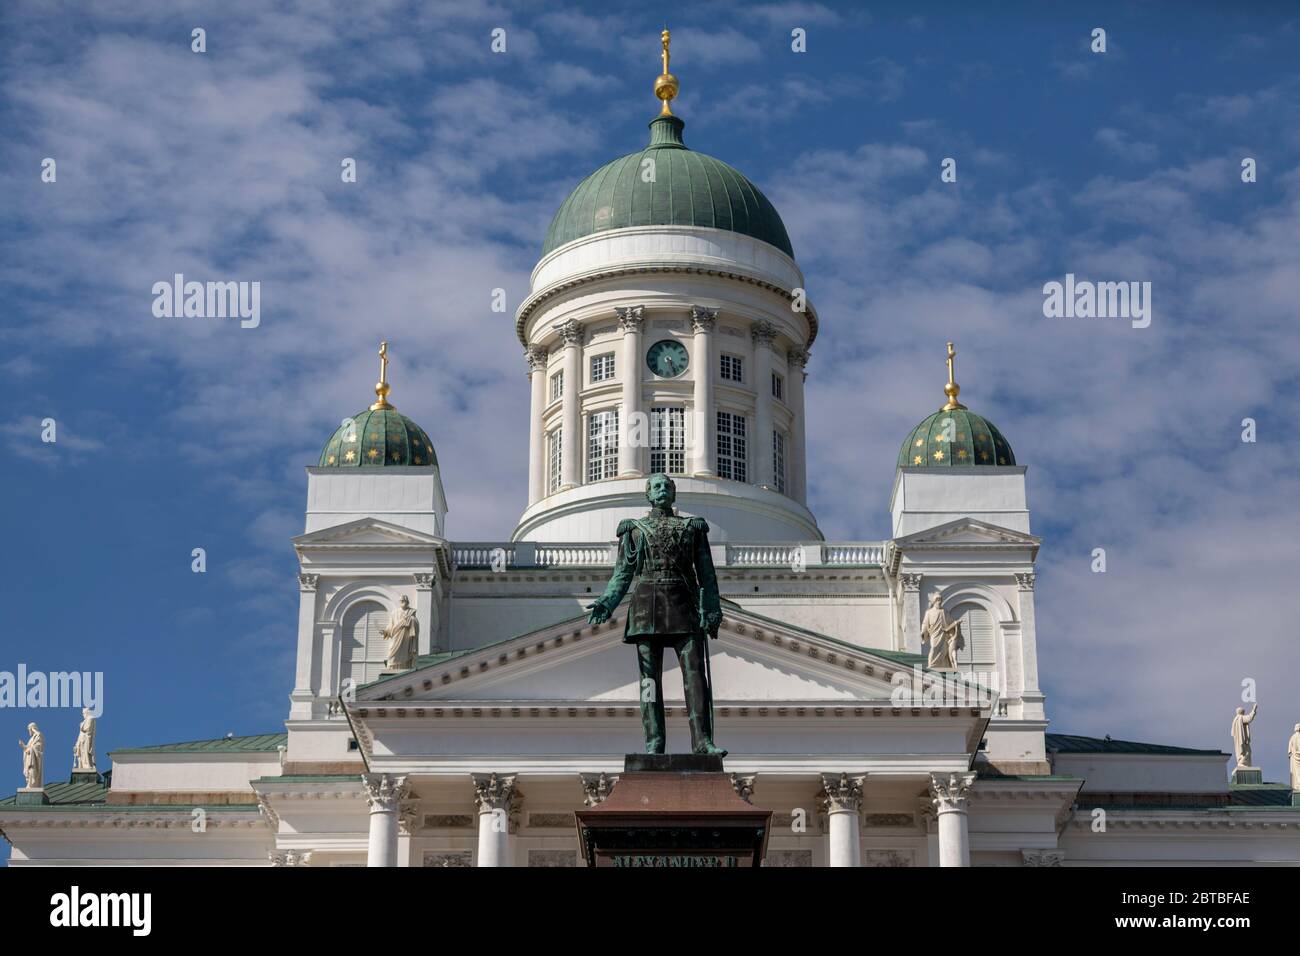 Alexander II. Von Russland ließ die finnischen Menschen unter russischem Regime unabhängig leben. Er war in Finnland beliebt und seine Statue befindet sich auf dem Senatsplatz. Stockfoto